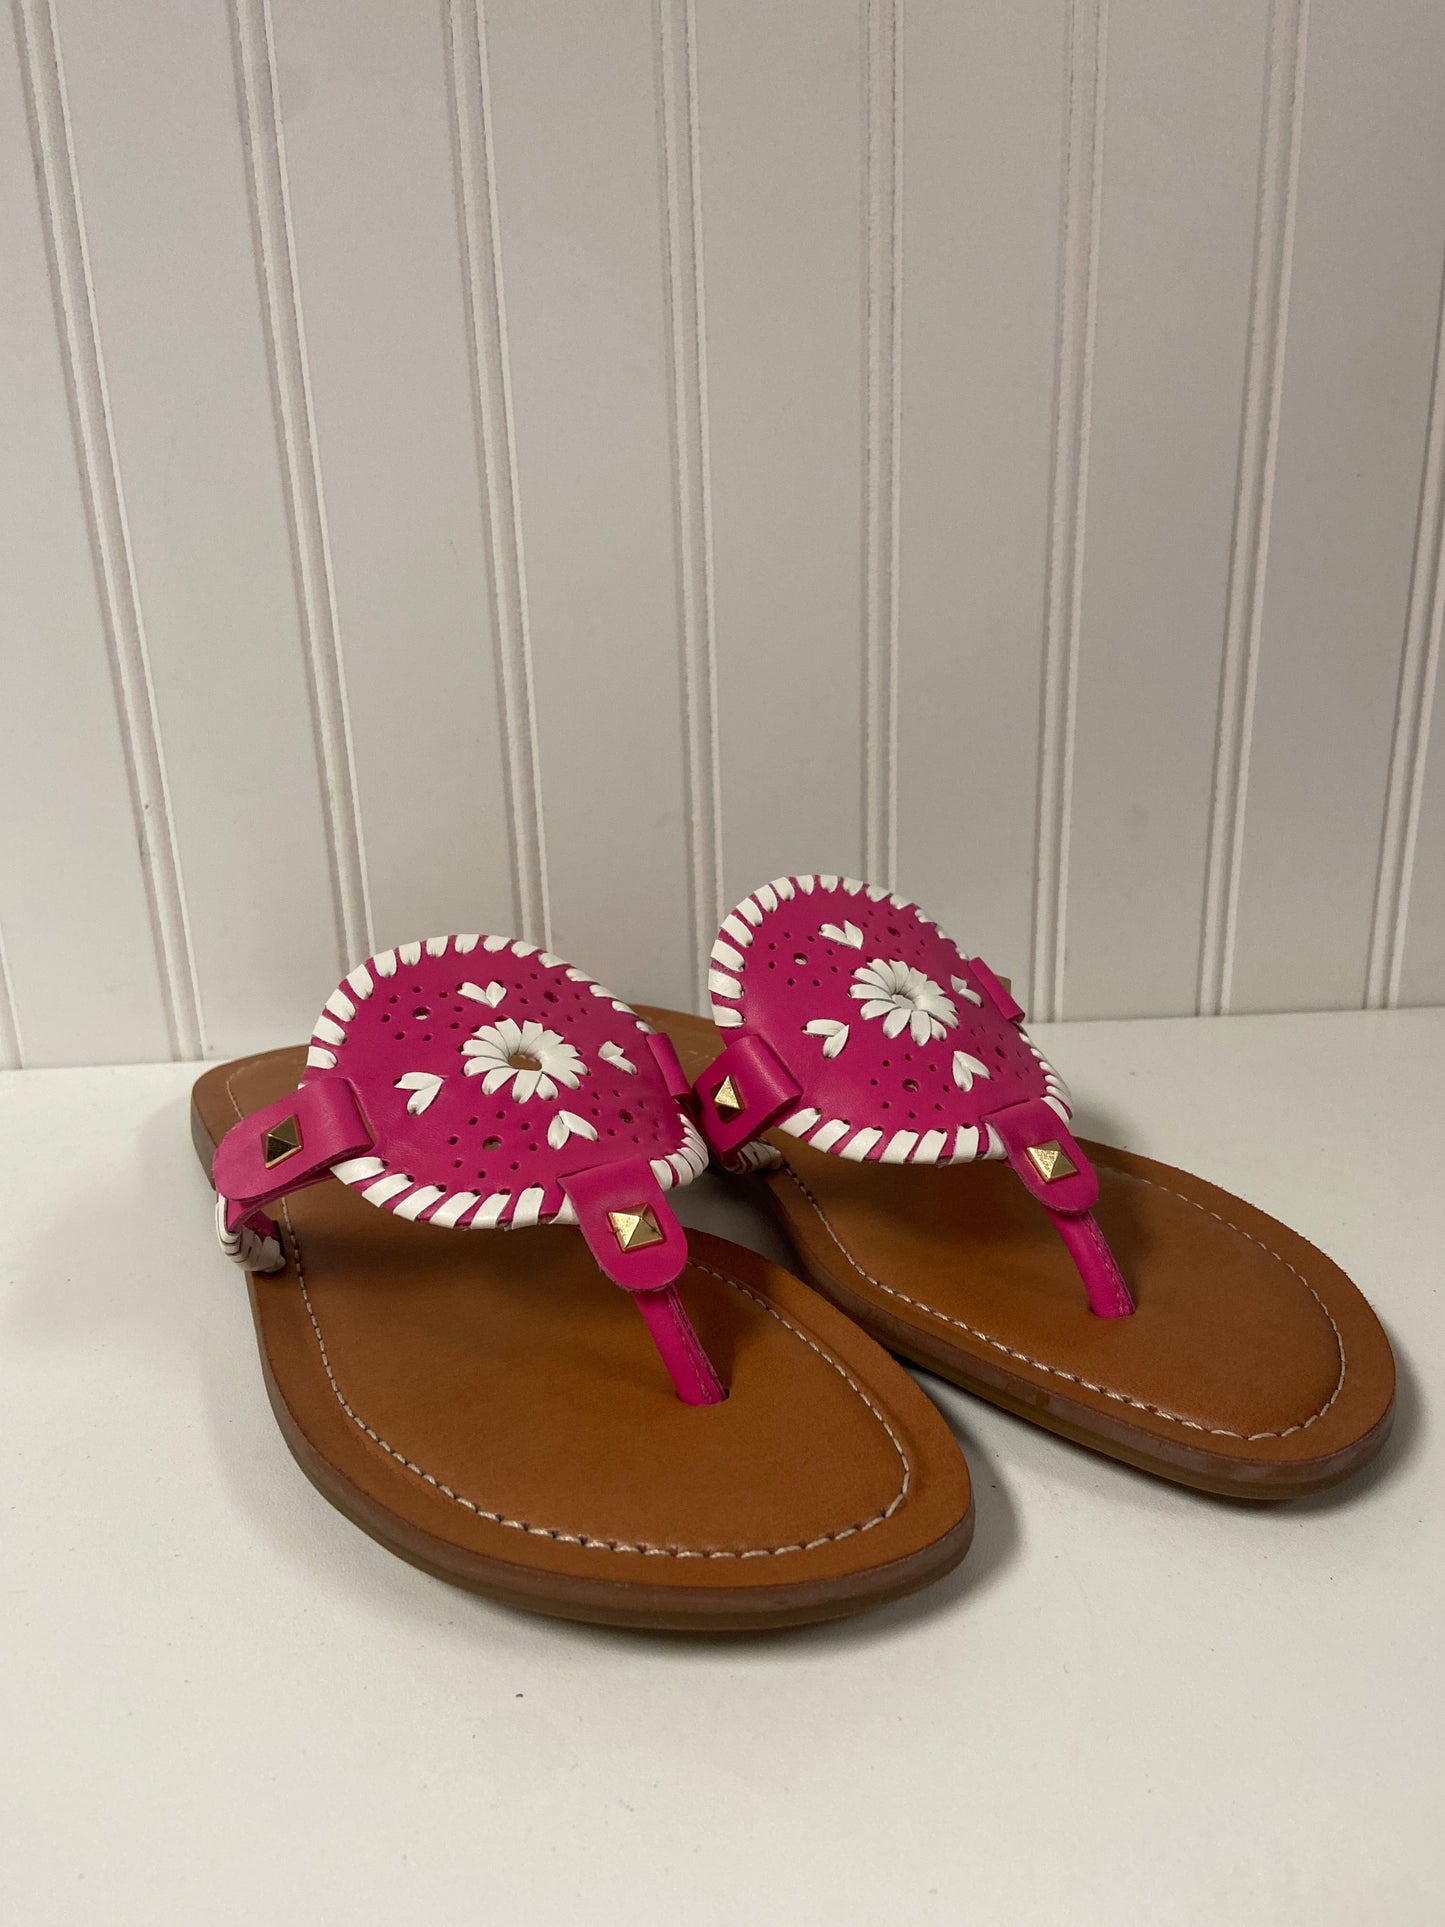 Brown & Pink Sandals Flip Flops Jack Rogers, Size 8.5